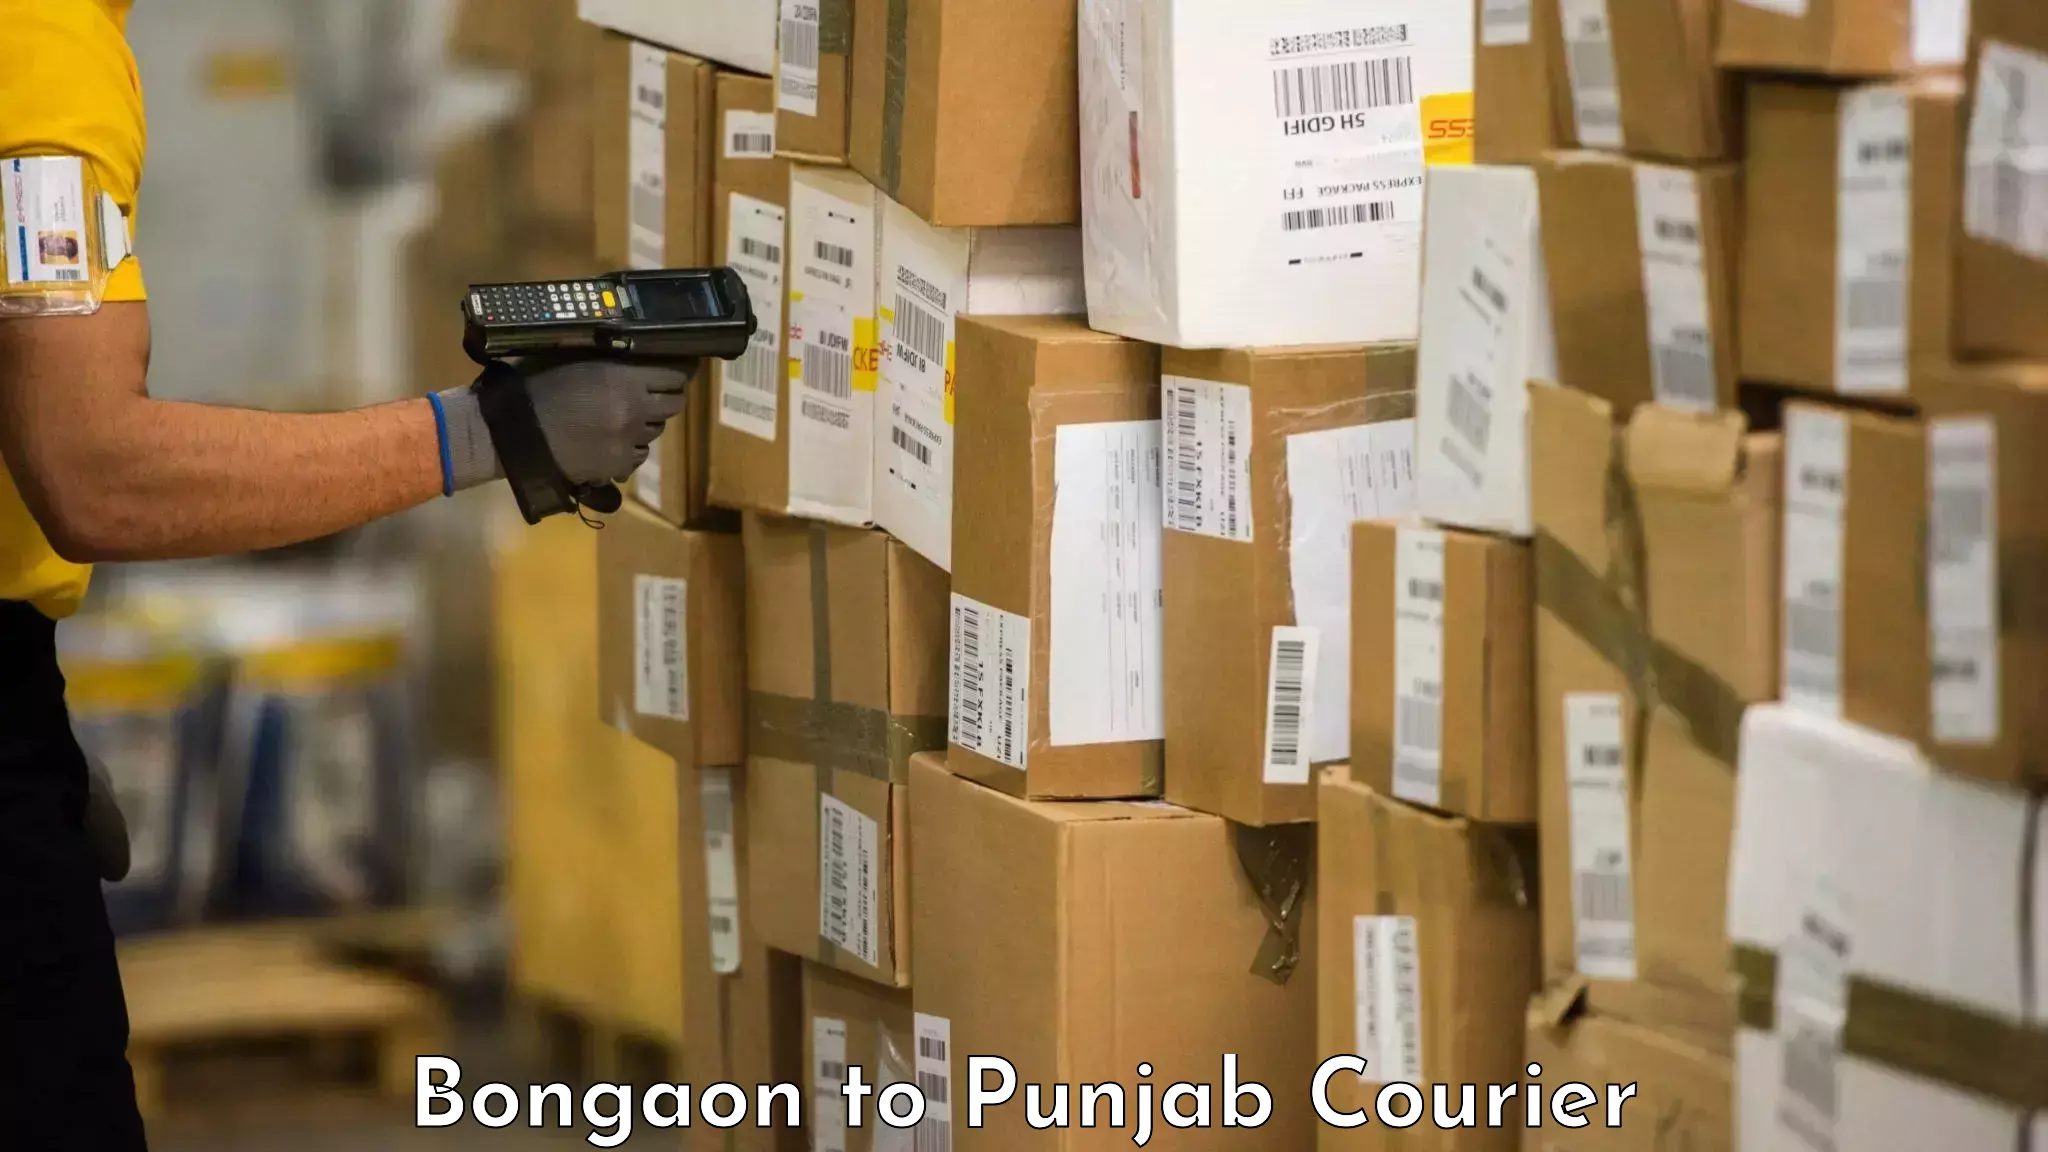 Baggage transport innovation Bongaon to Punjab